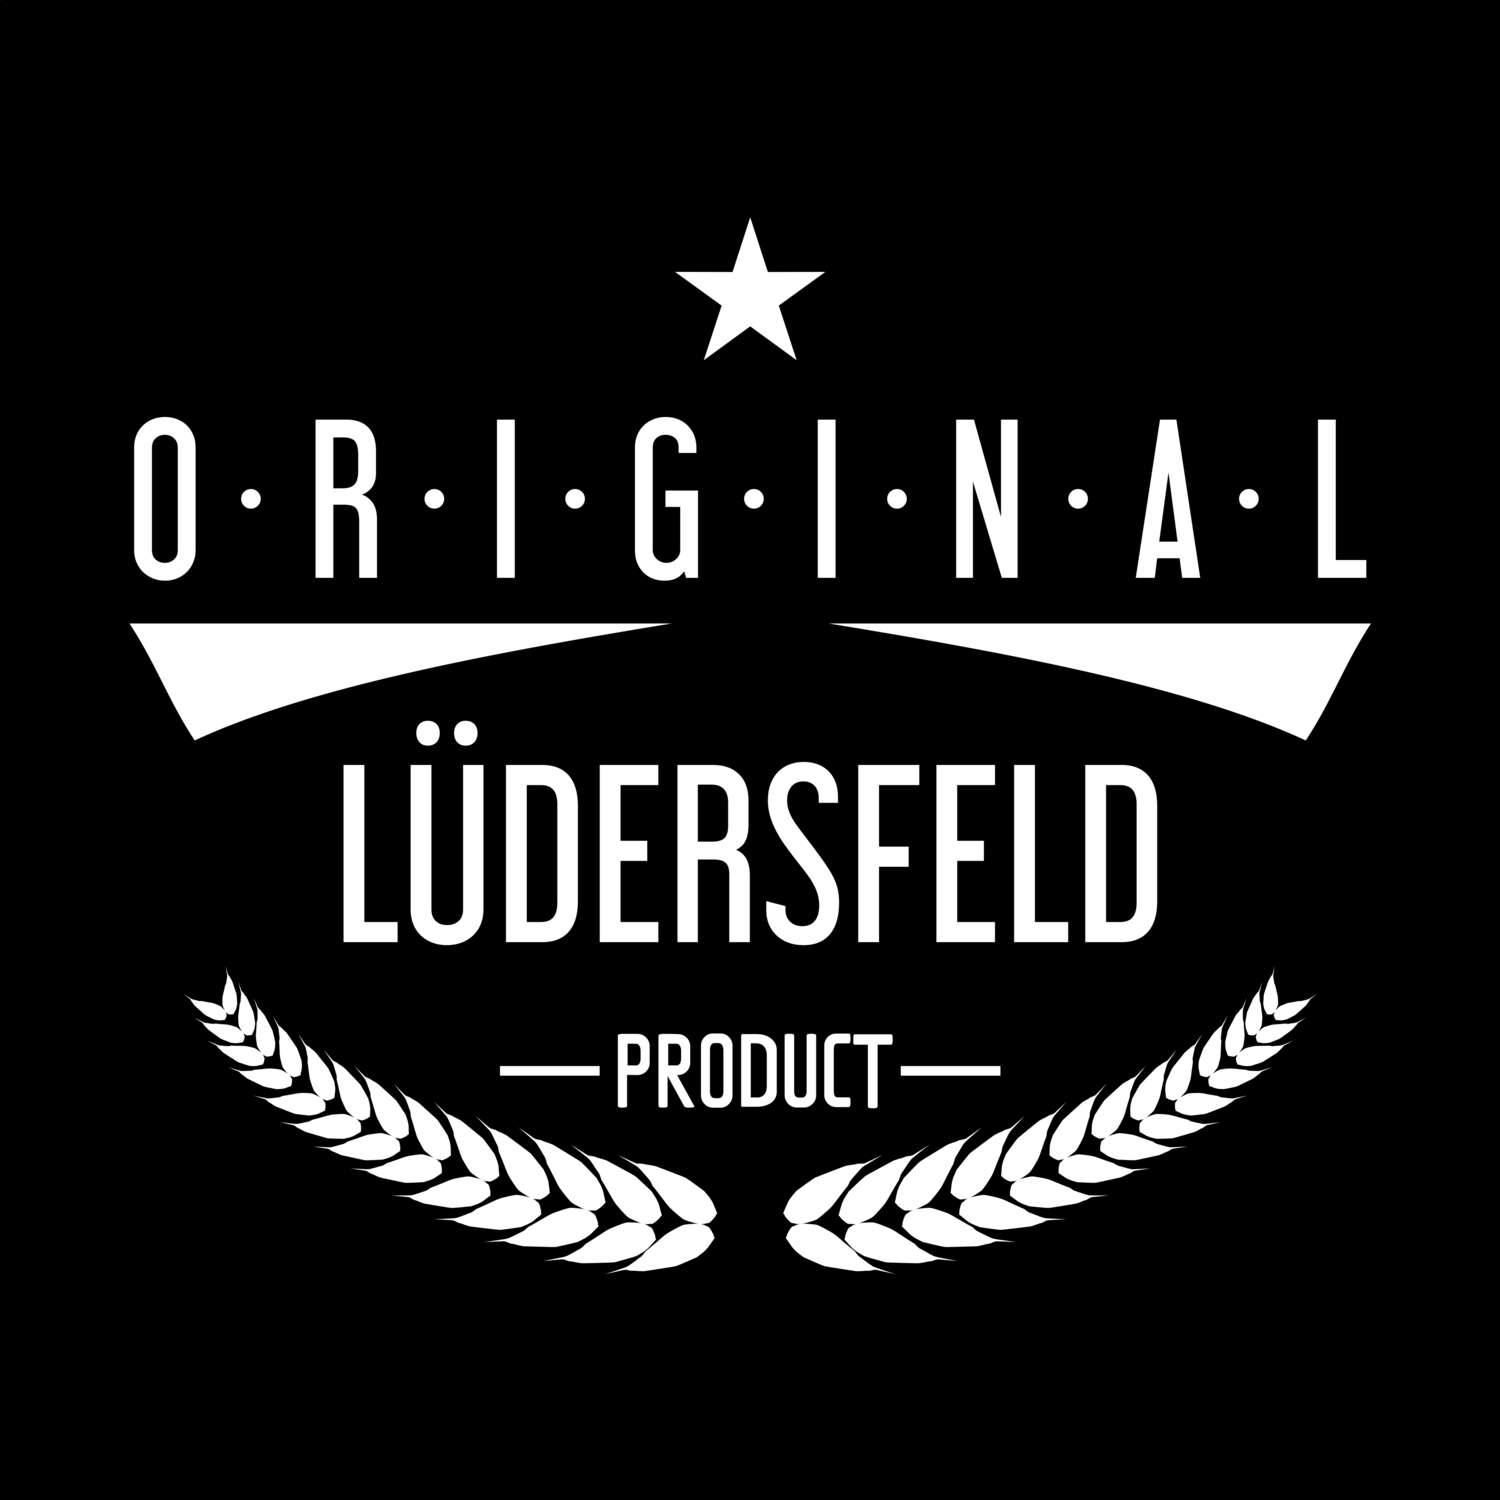 Lüdersfeld T-Shirt »Original Product«